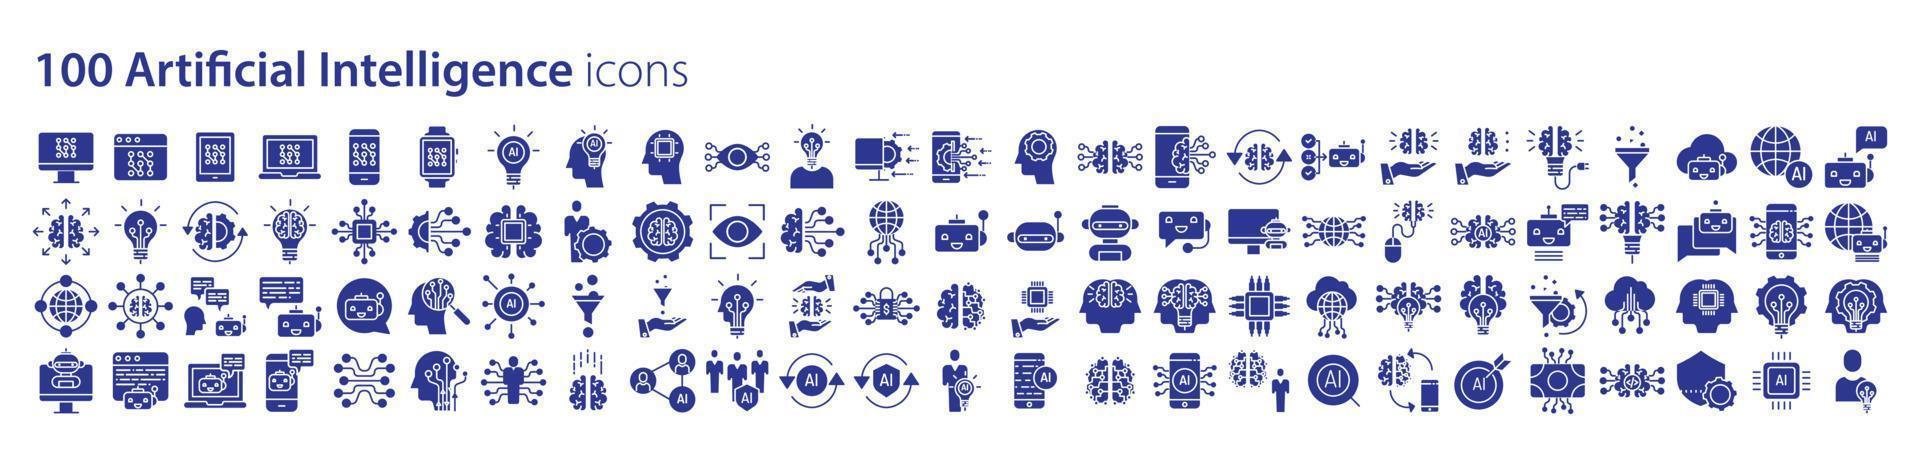 coleção de ícones relacionados à inteligência artificial e aprendizado de máquina, incluindo ícones como monitor, web, telefone, laptop e muito mais. ilustrações vetoriais, pixel perfeito vetor